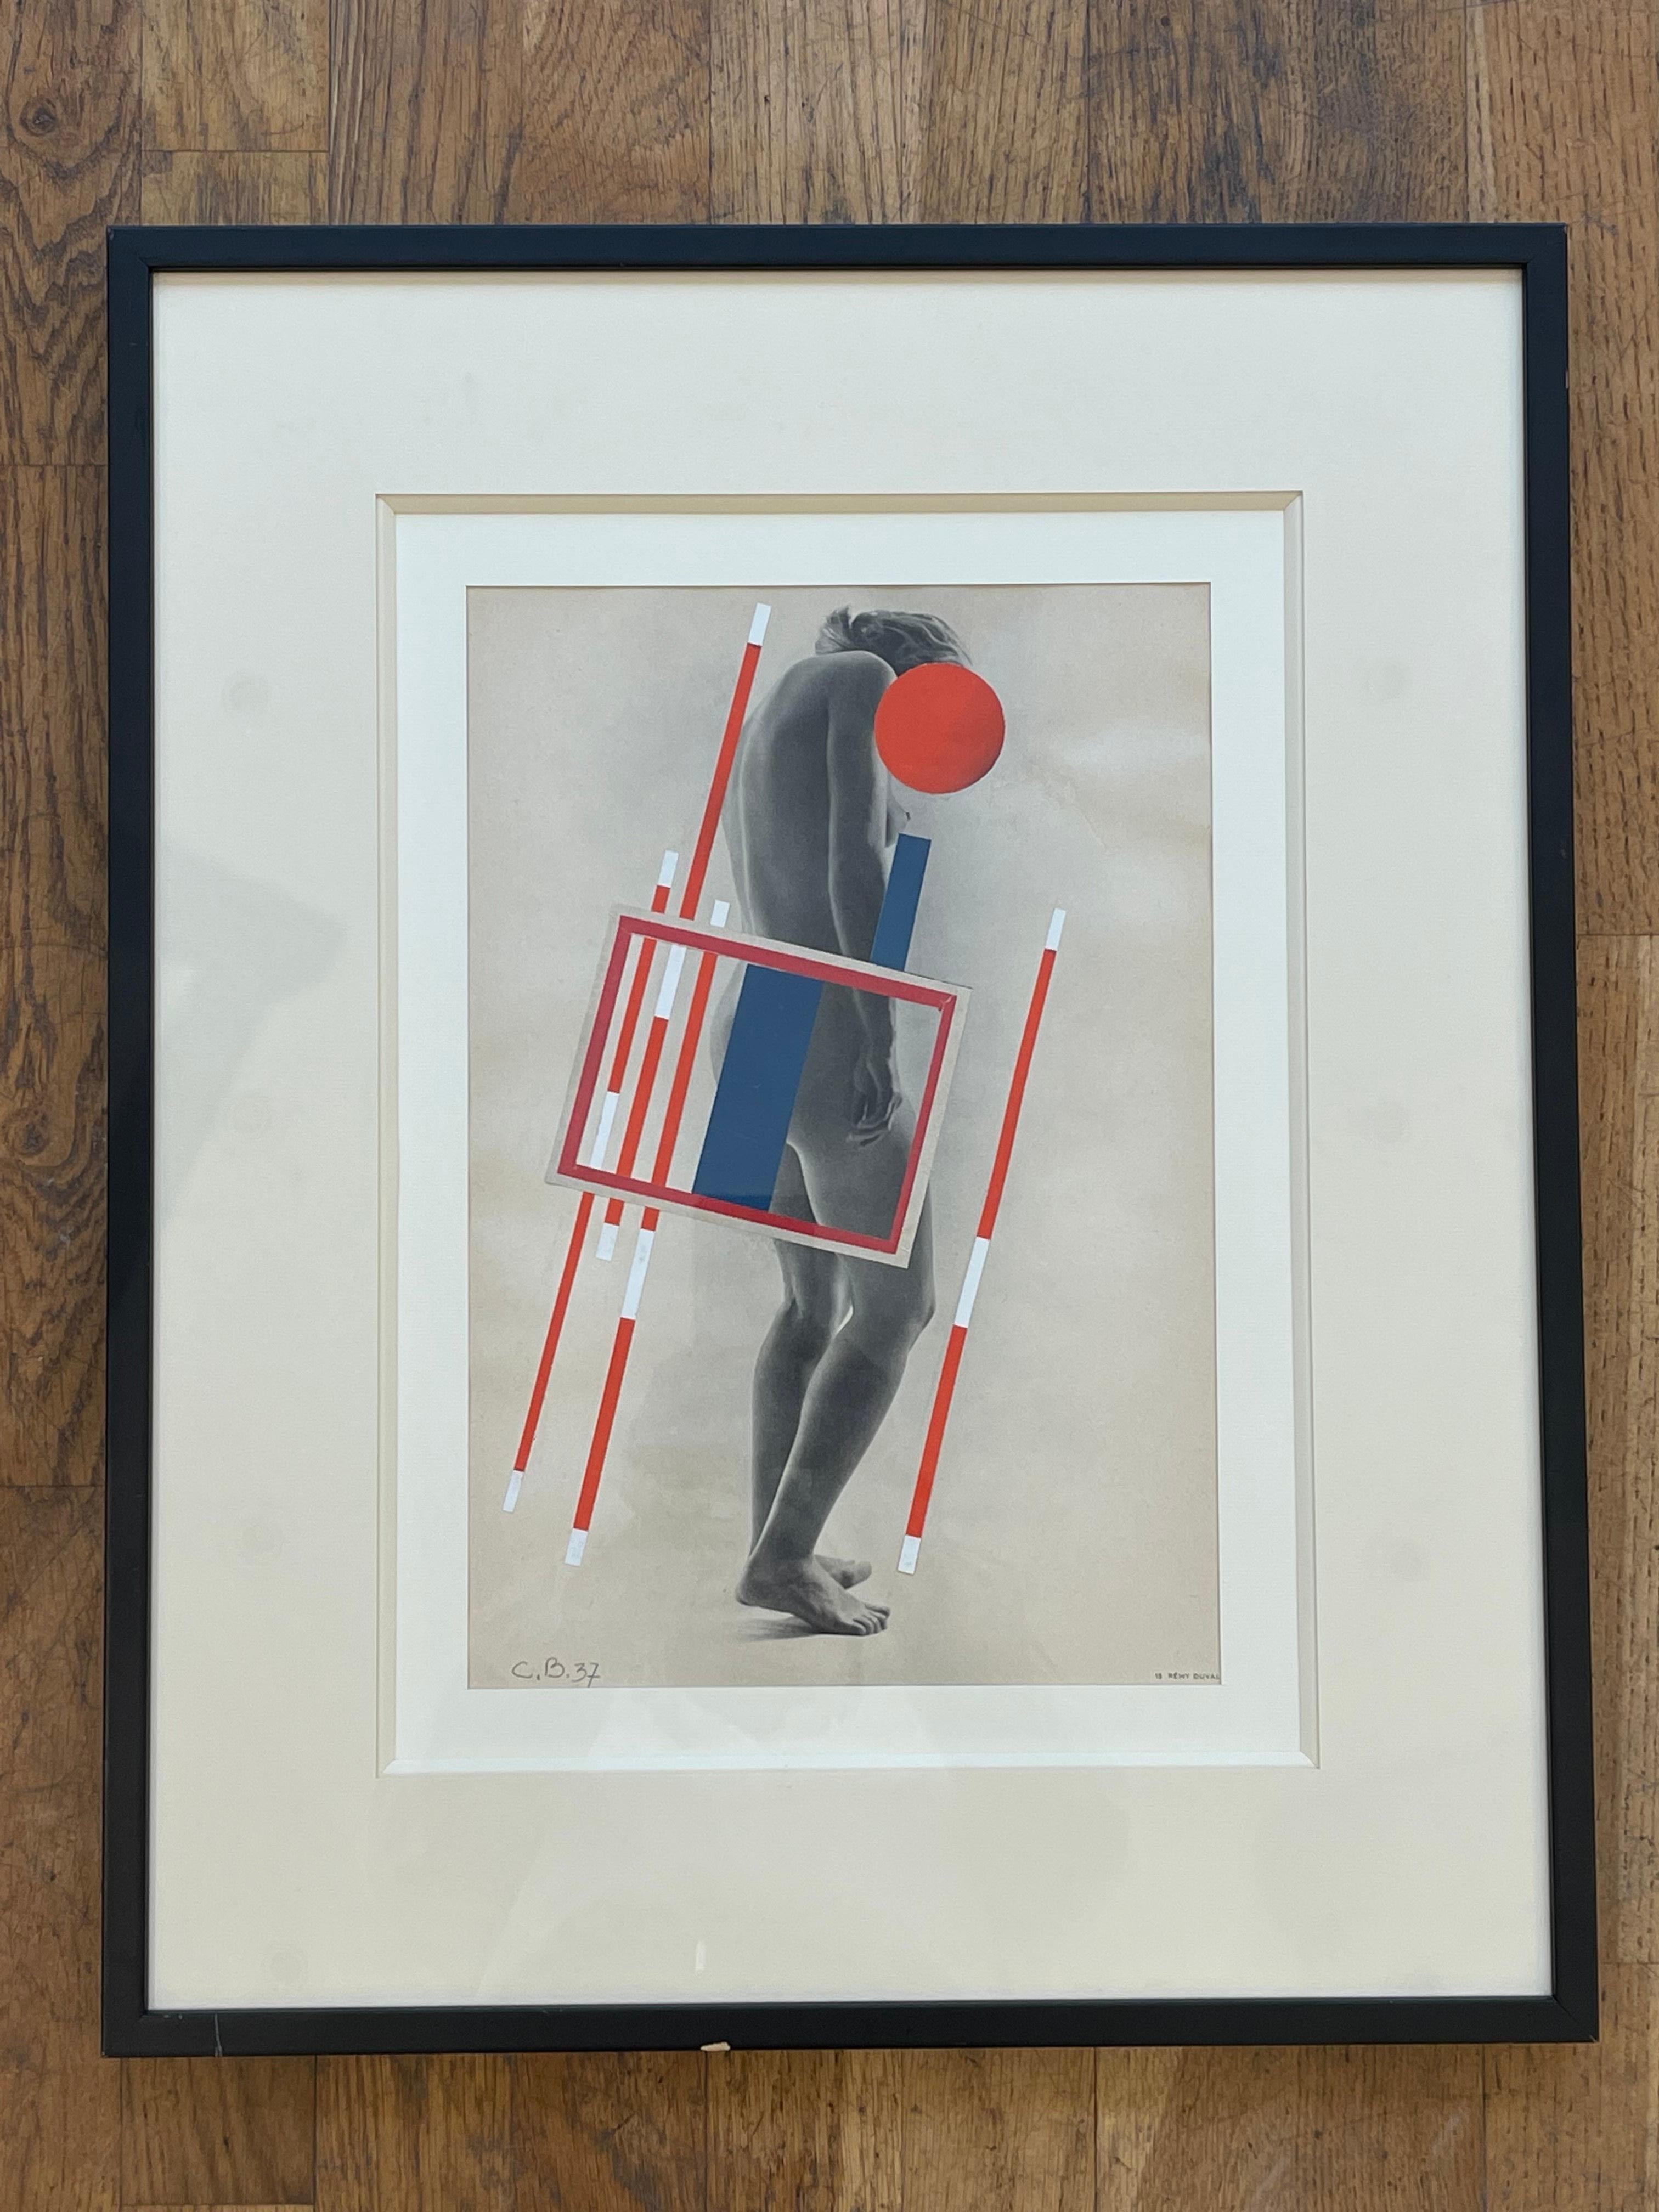 Atemberaubende Collage mit konstruktivistischen Motiven von Camille Bryen (1907-1977) auf einem schwarz-weißen Aktfotodruck von Rémy Duval. 
Datiert 1937, monogrammiert CB unten links. 
Dieses Werk ist ein Frühwerk des berühmten Künstlers Camille